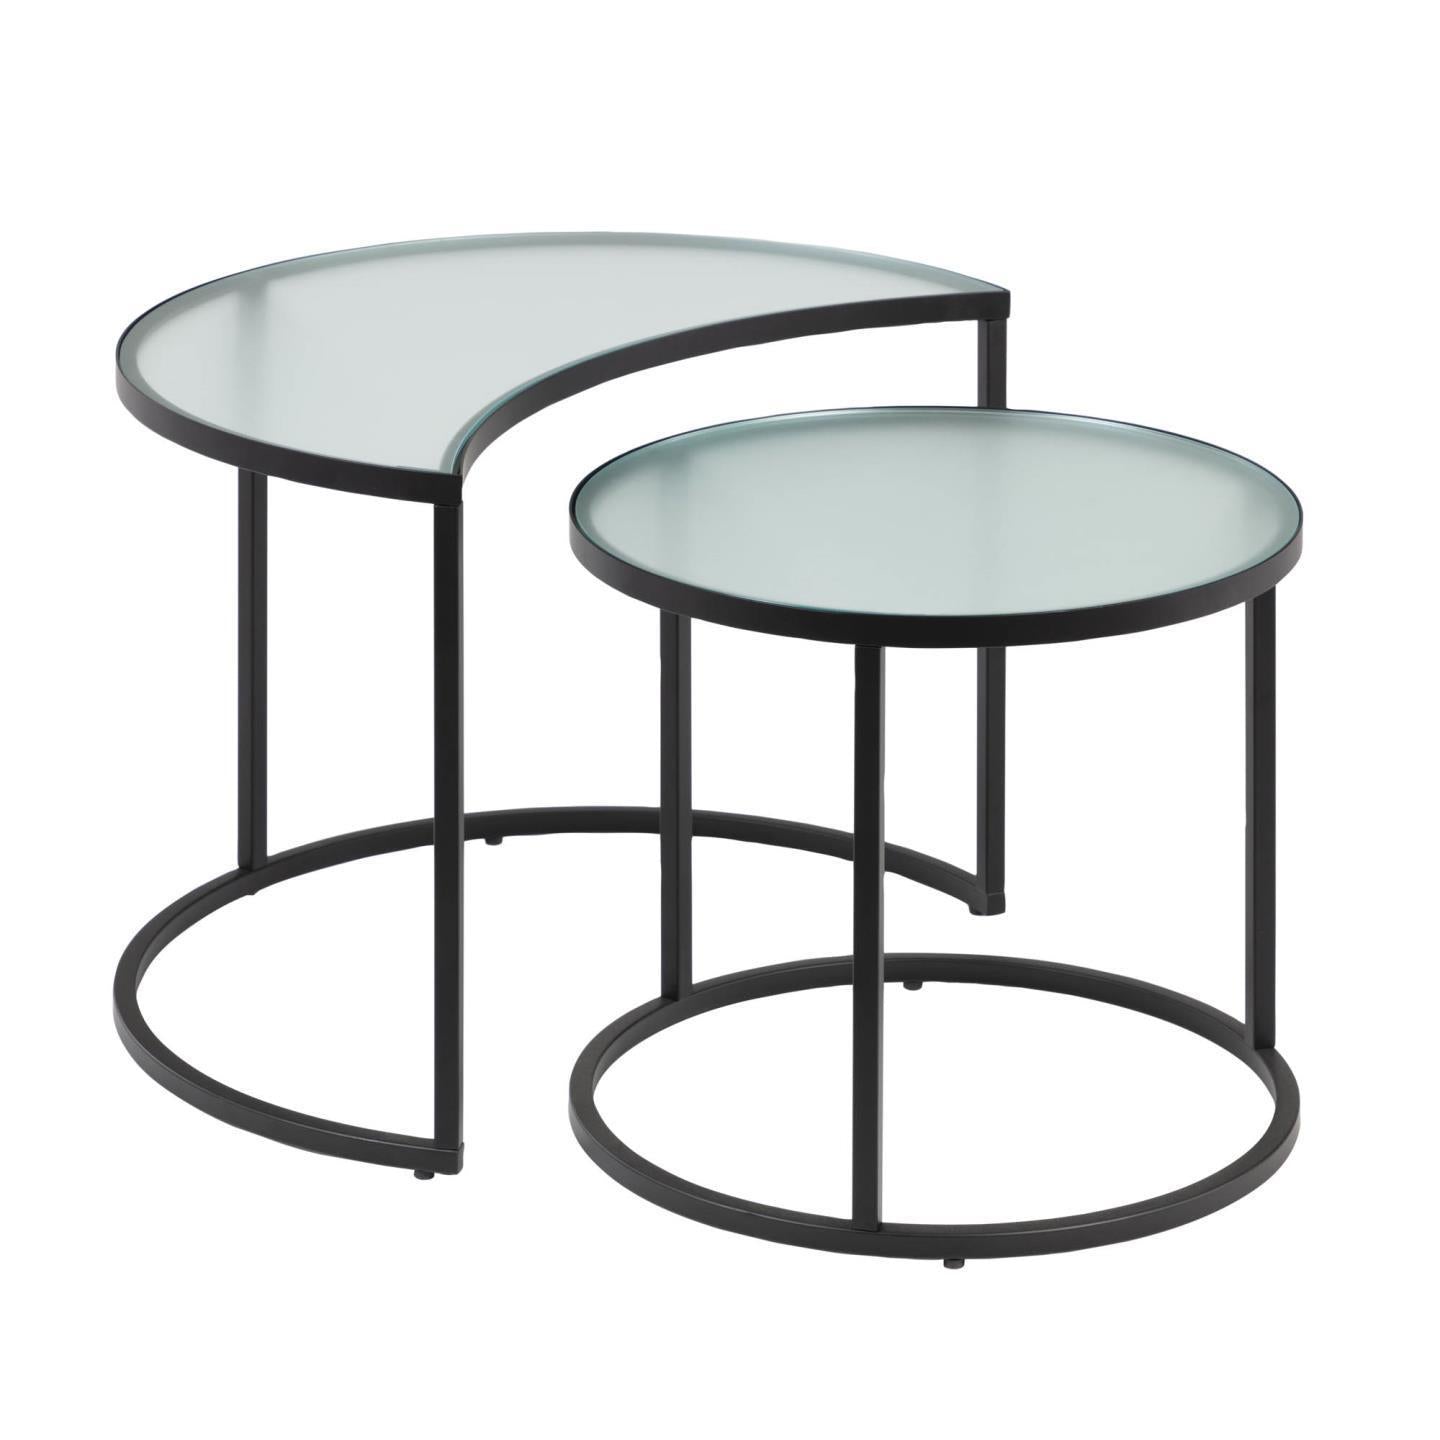 Bast set of 2 side tables